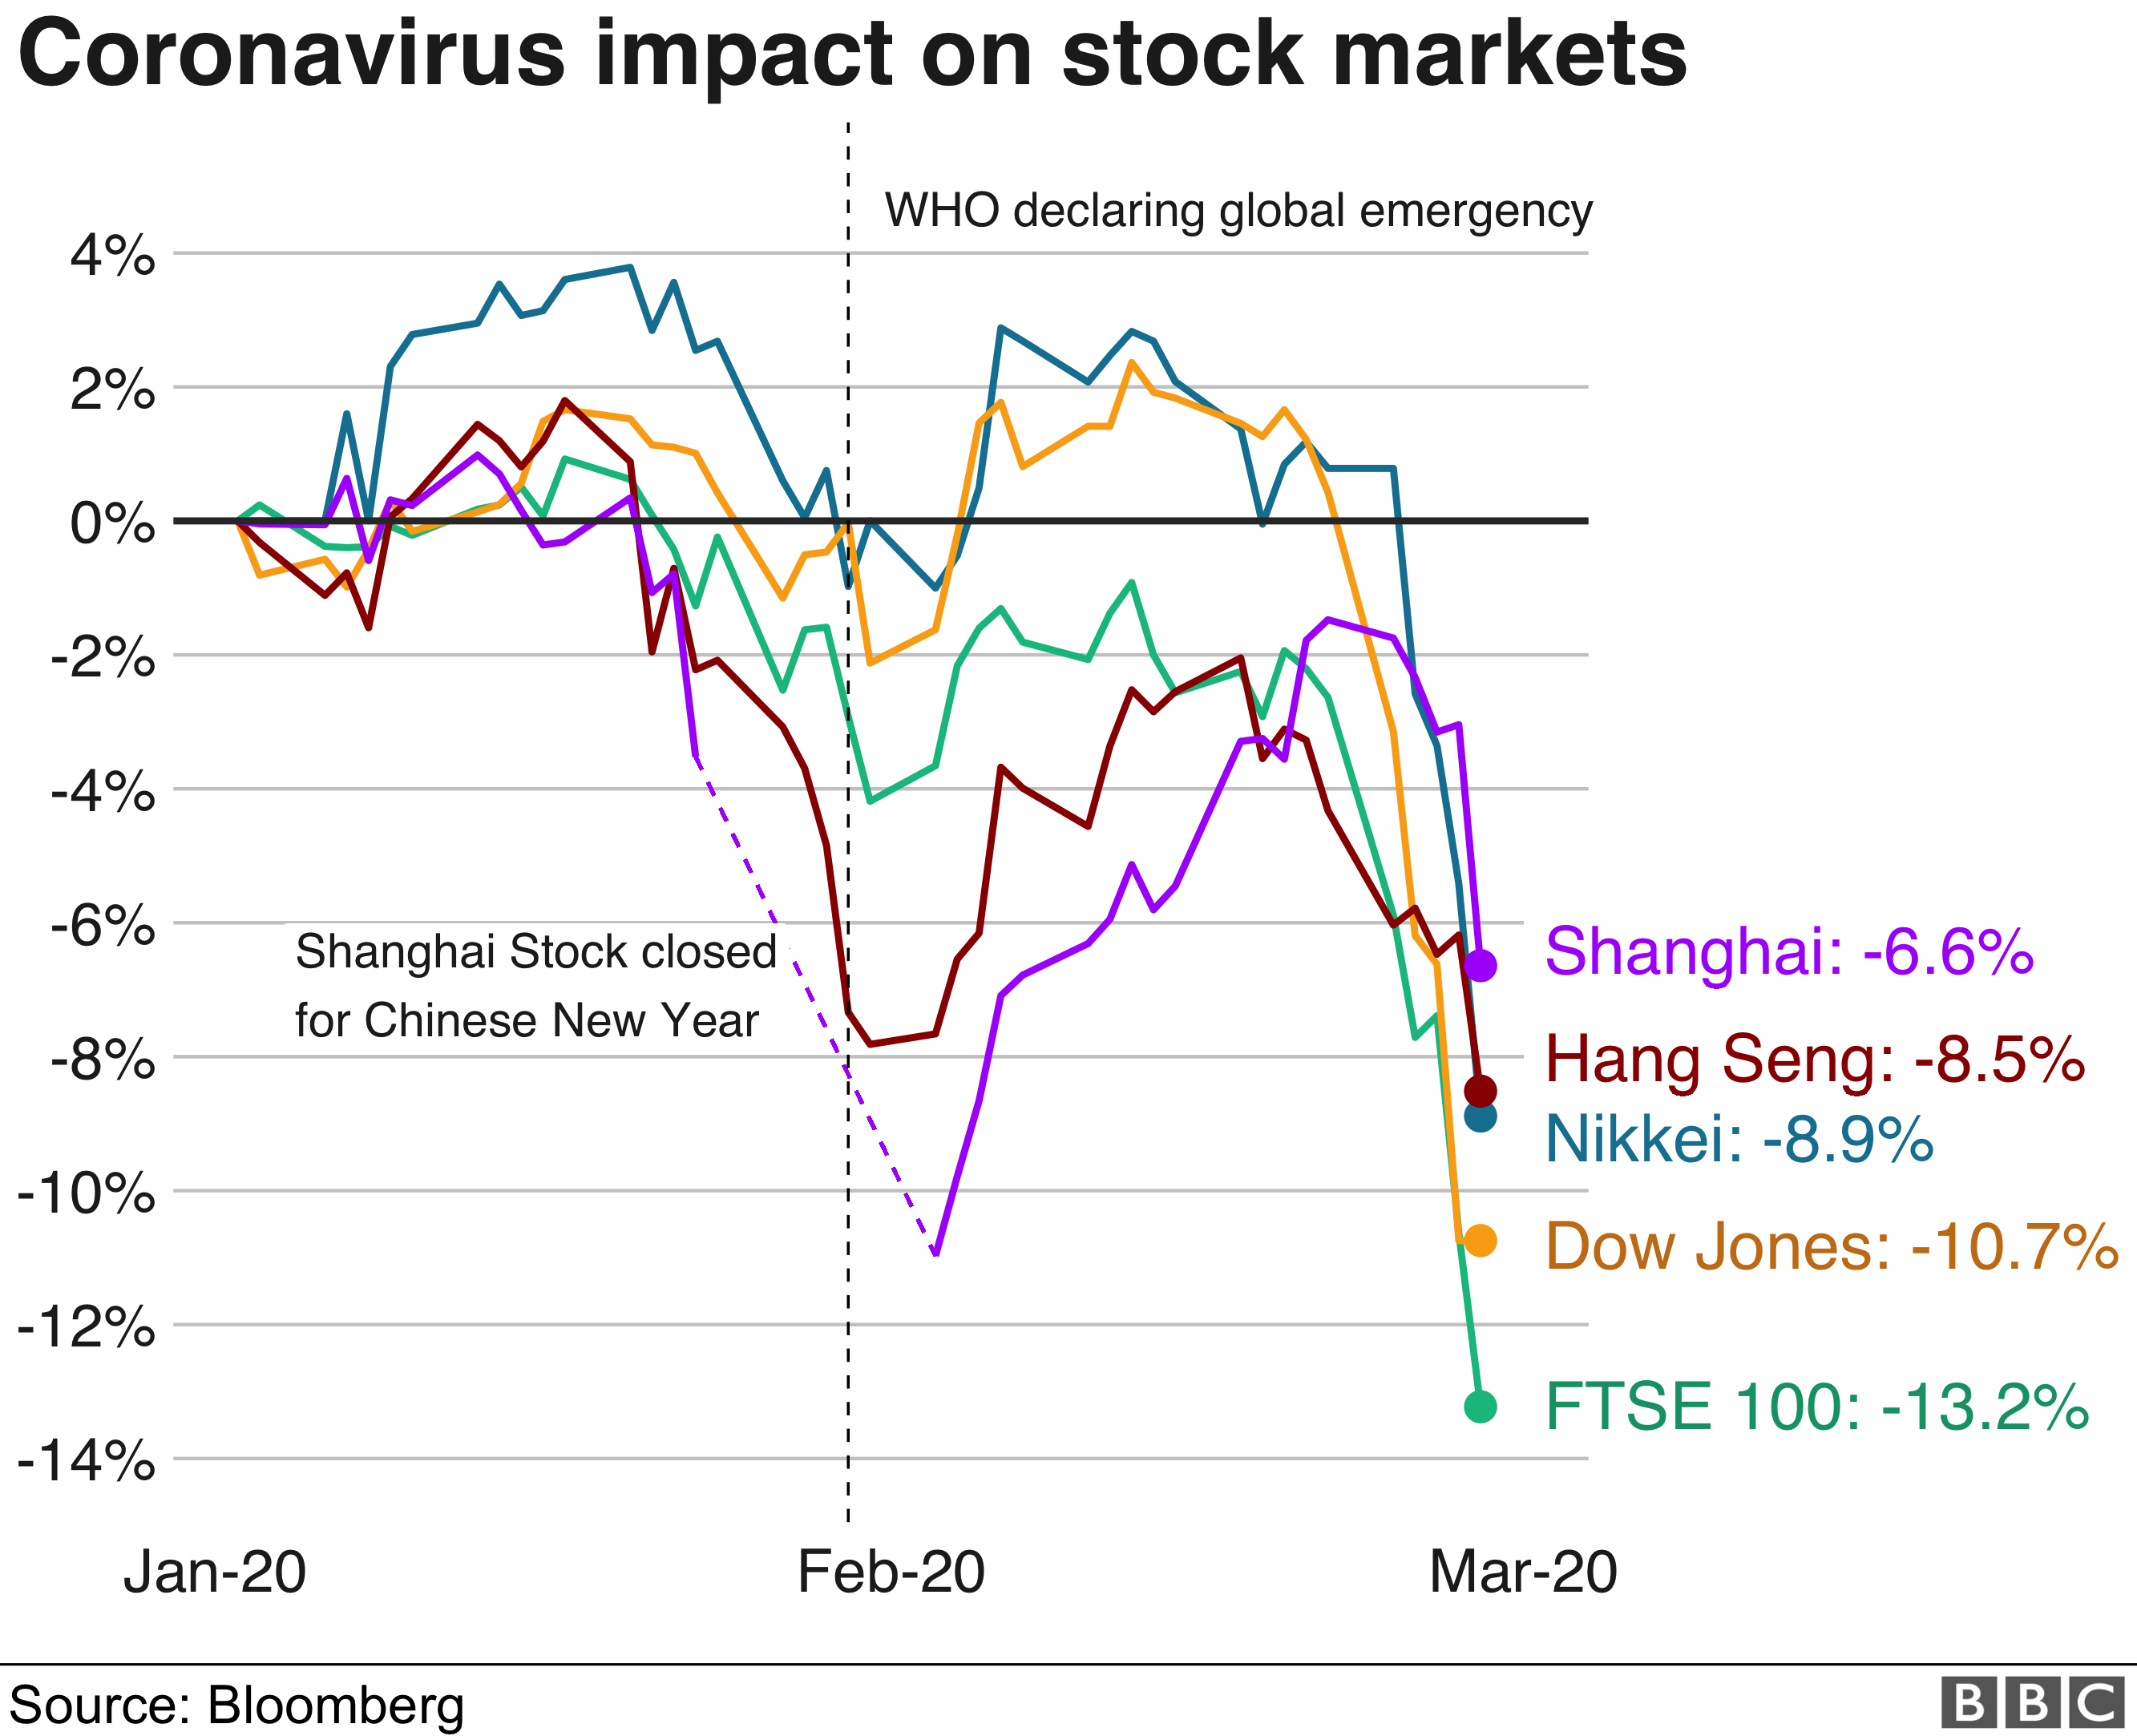 Coronavirus stock market